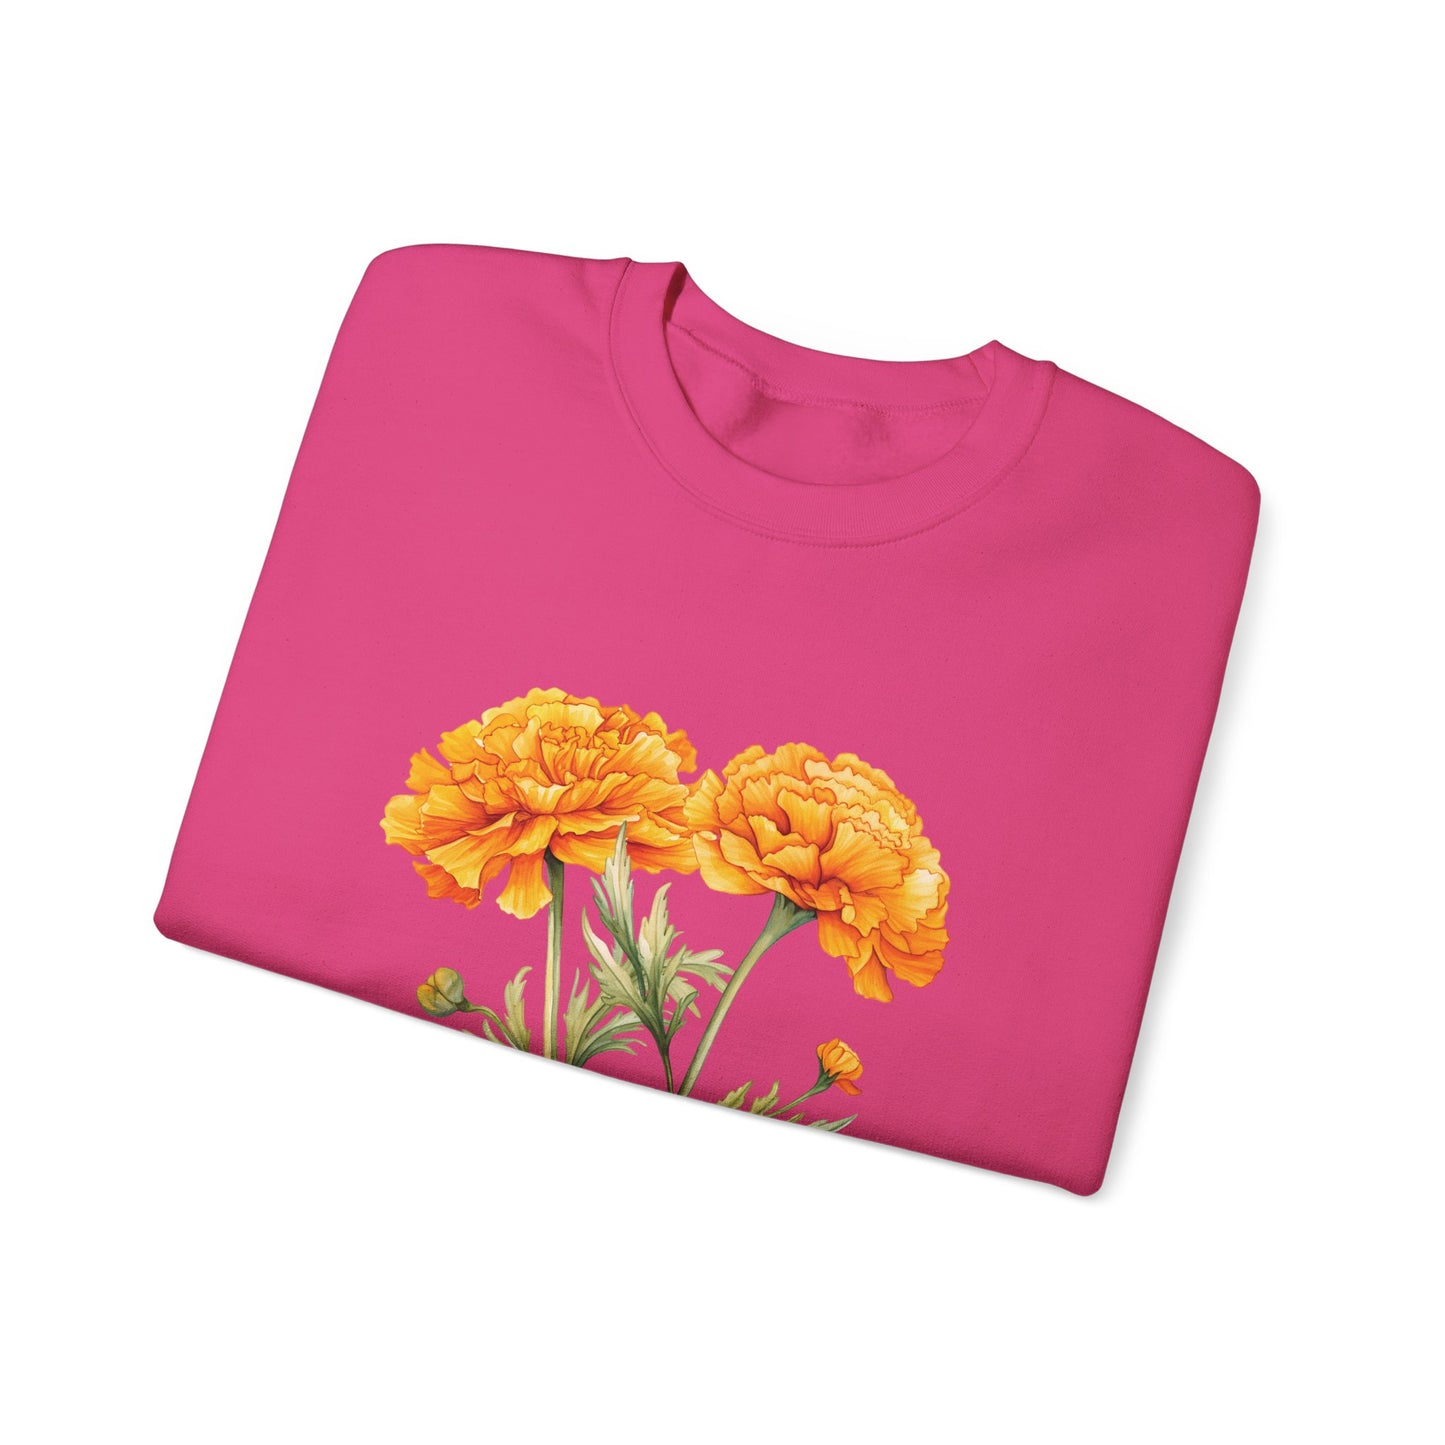 October Birth Flower (Marigold) - Unisex Heavy Blend™ Crewneck Sweatshirt